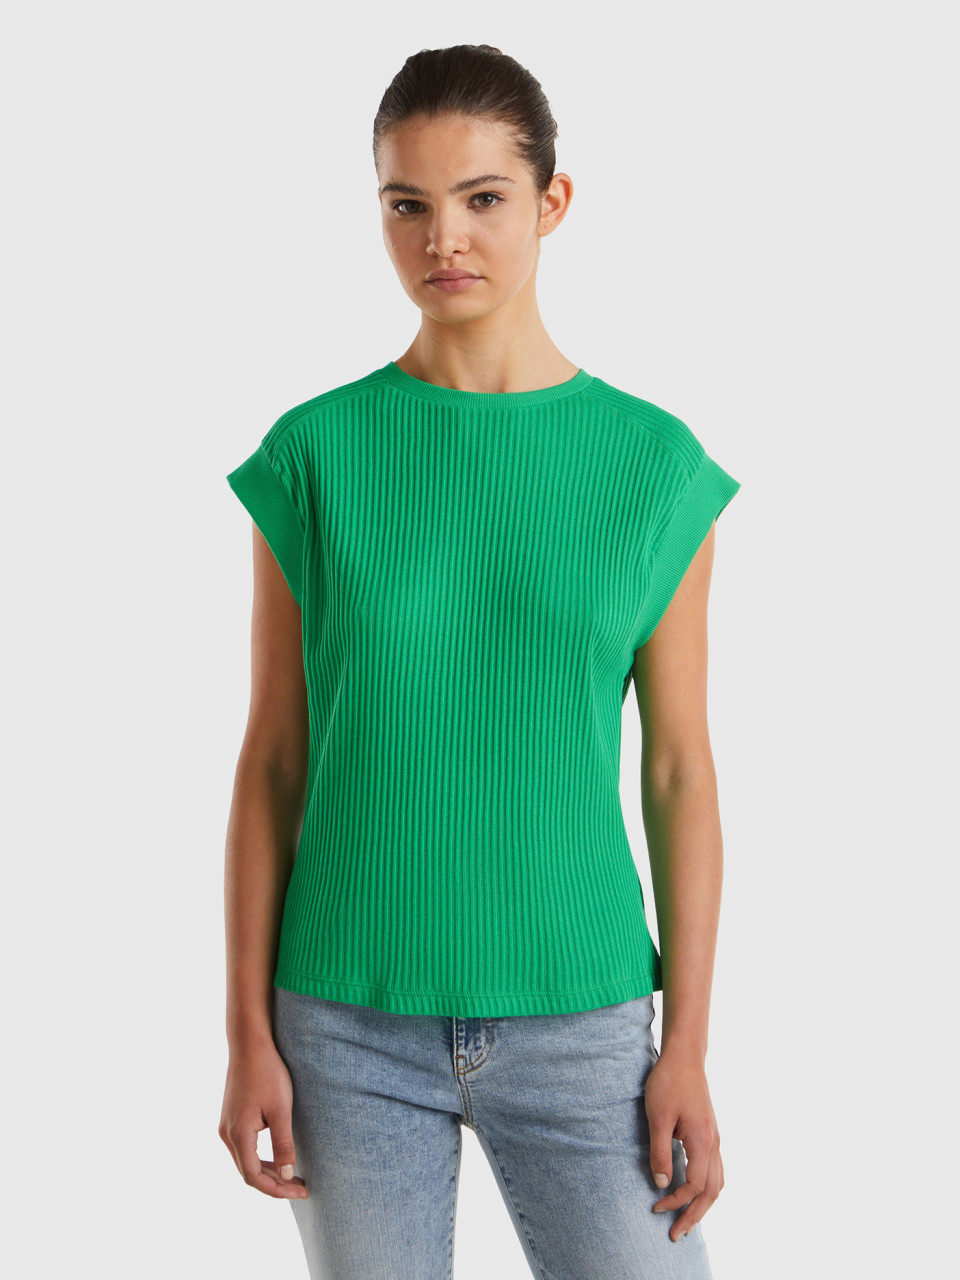 Benetton, Comfort Fit T-shirt, Green, Women